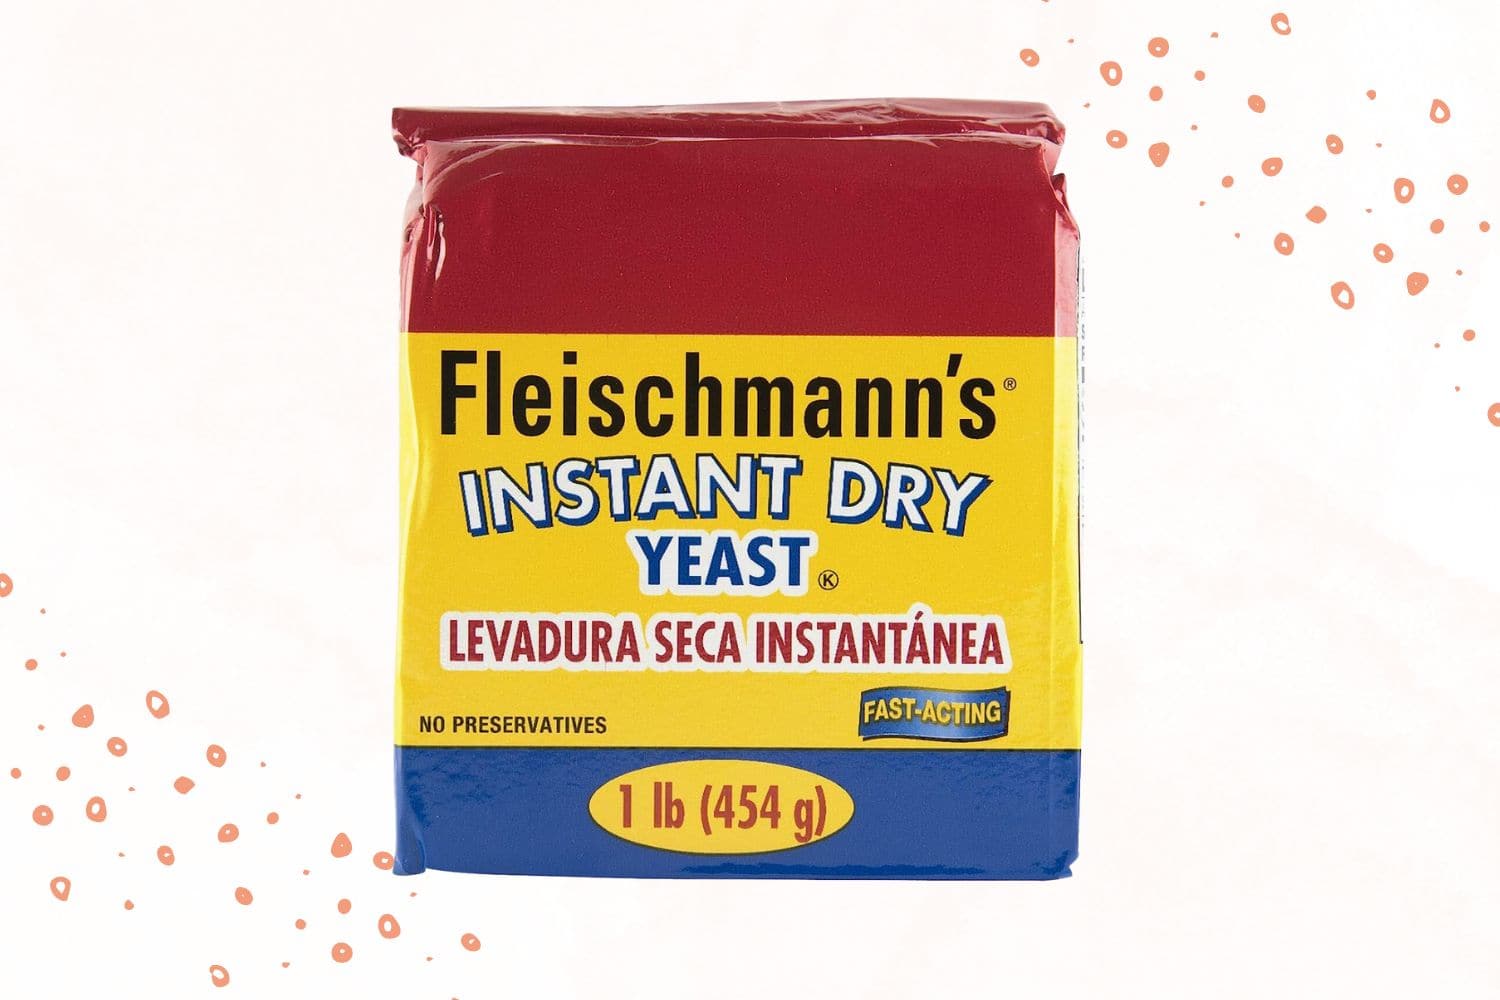 Fleischmann's Instant Dry Yeast